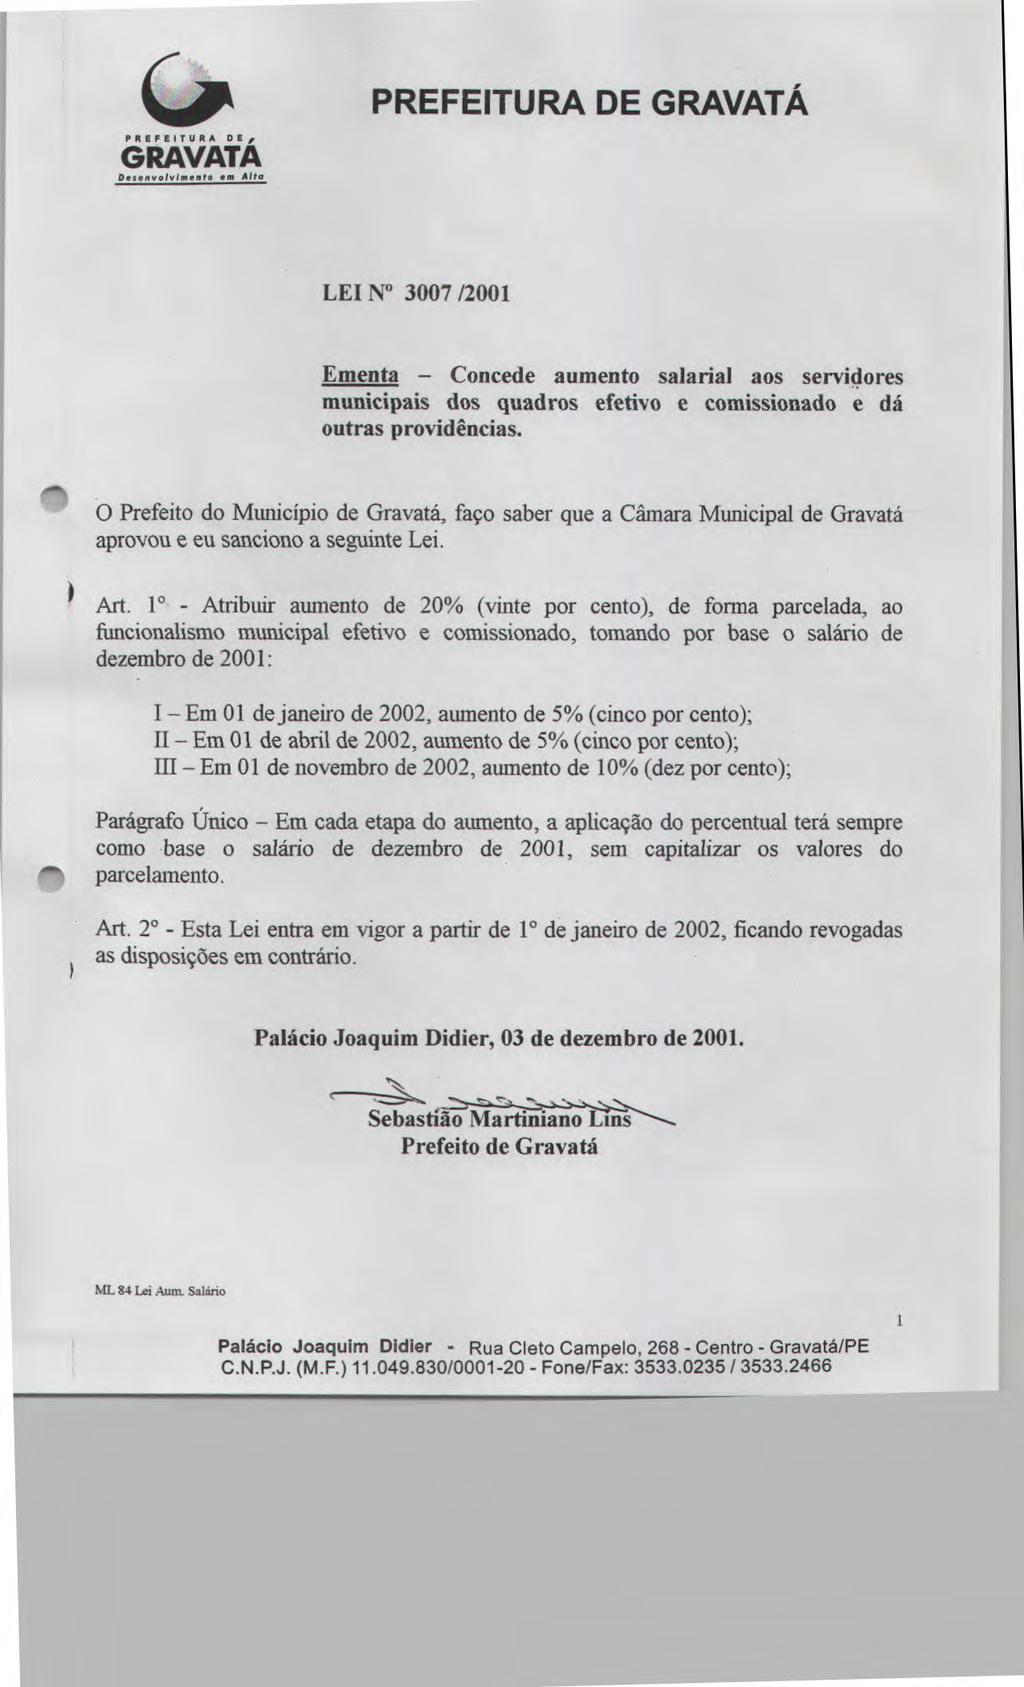 PREFEITURA DE Desenvolvimento.m Alta PREFEITURA DE GRAVATÁ LEI No 3007/2001 Ementa - Concede aumento salarial aos servidores municipais dos quadros efetivo e comissionado e dá outras providências.